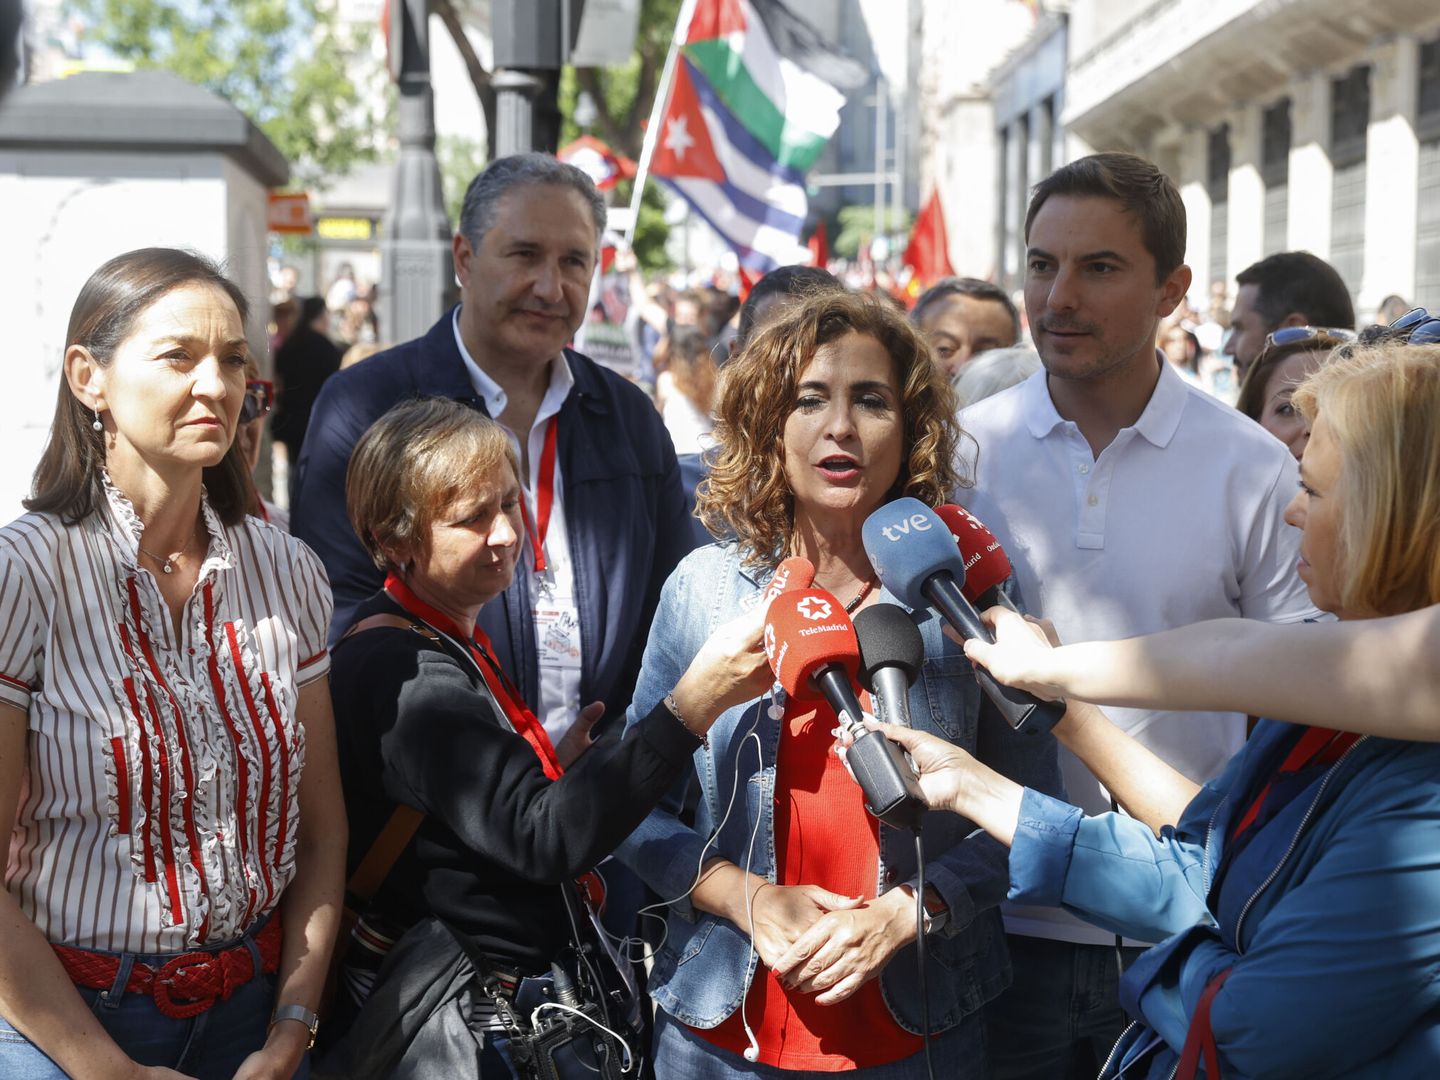 La ministra de Hacienda, María Jesús Montero, atiende a la prensa durante su participación en una manifestación del Día del Trabajador en Madrid. (EFE/Juan Carlos Hidalgo)